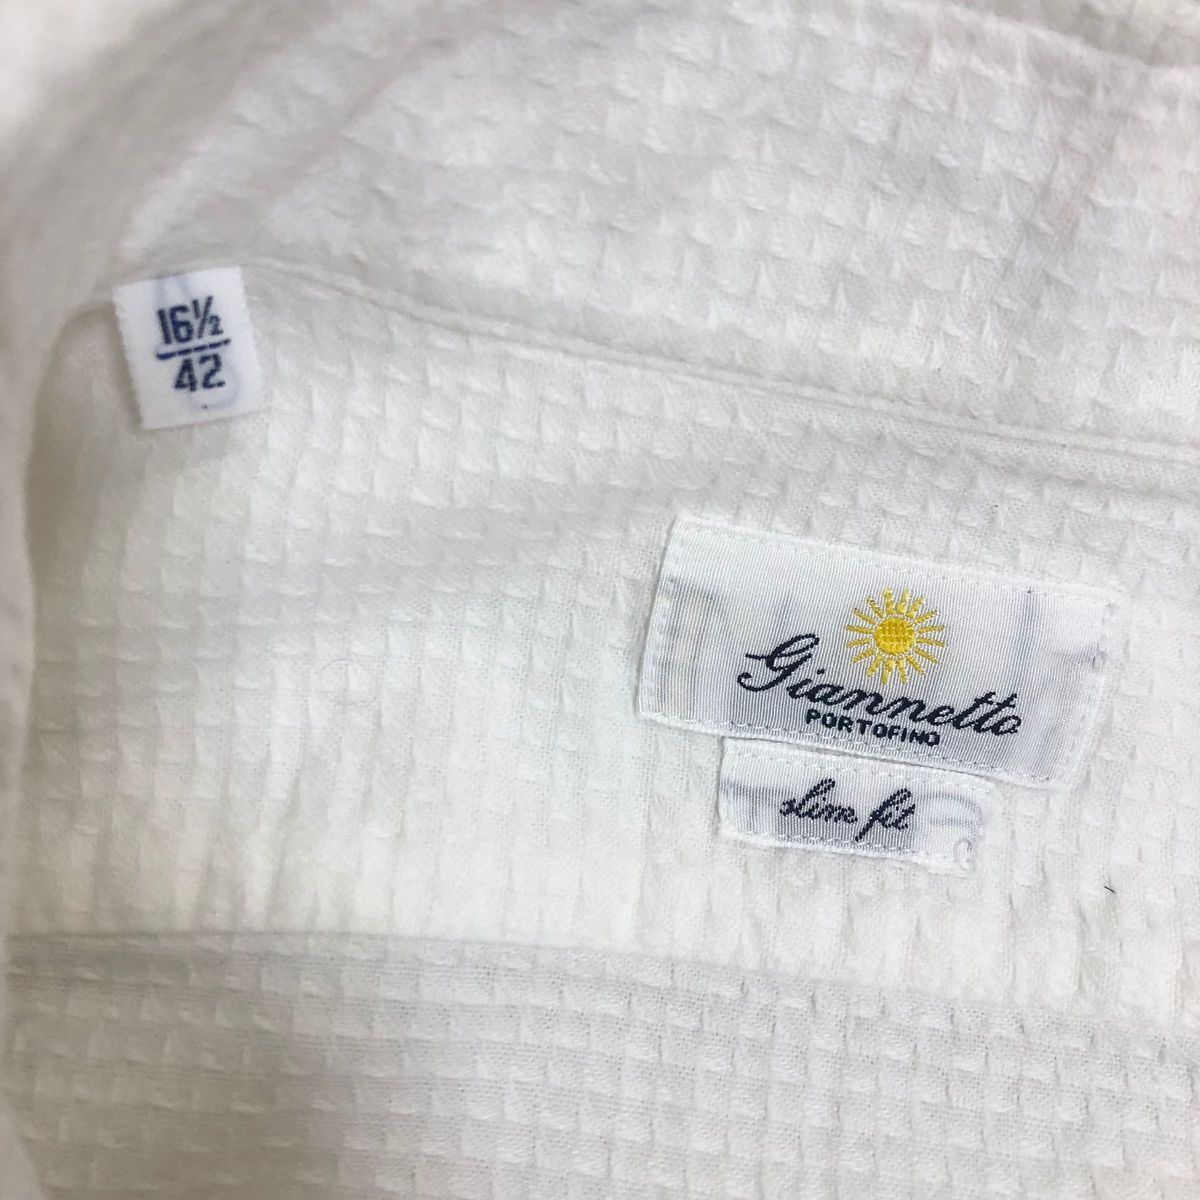 GIANNETTO カッタウェイホワイトシャツ42 16 1/2(L〜XL)